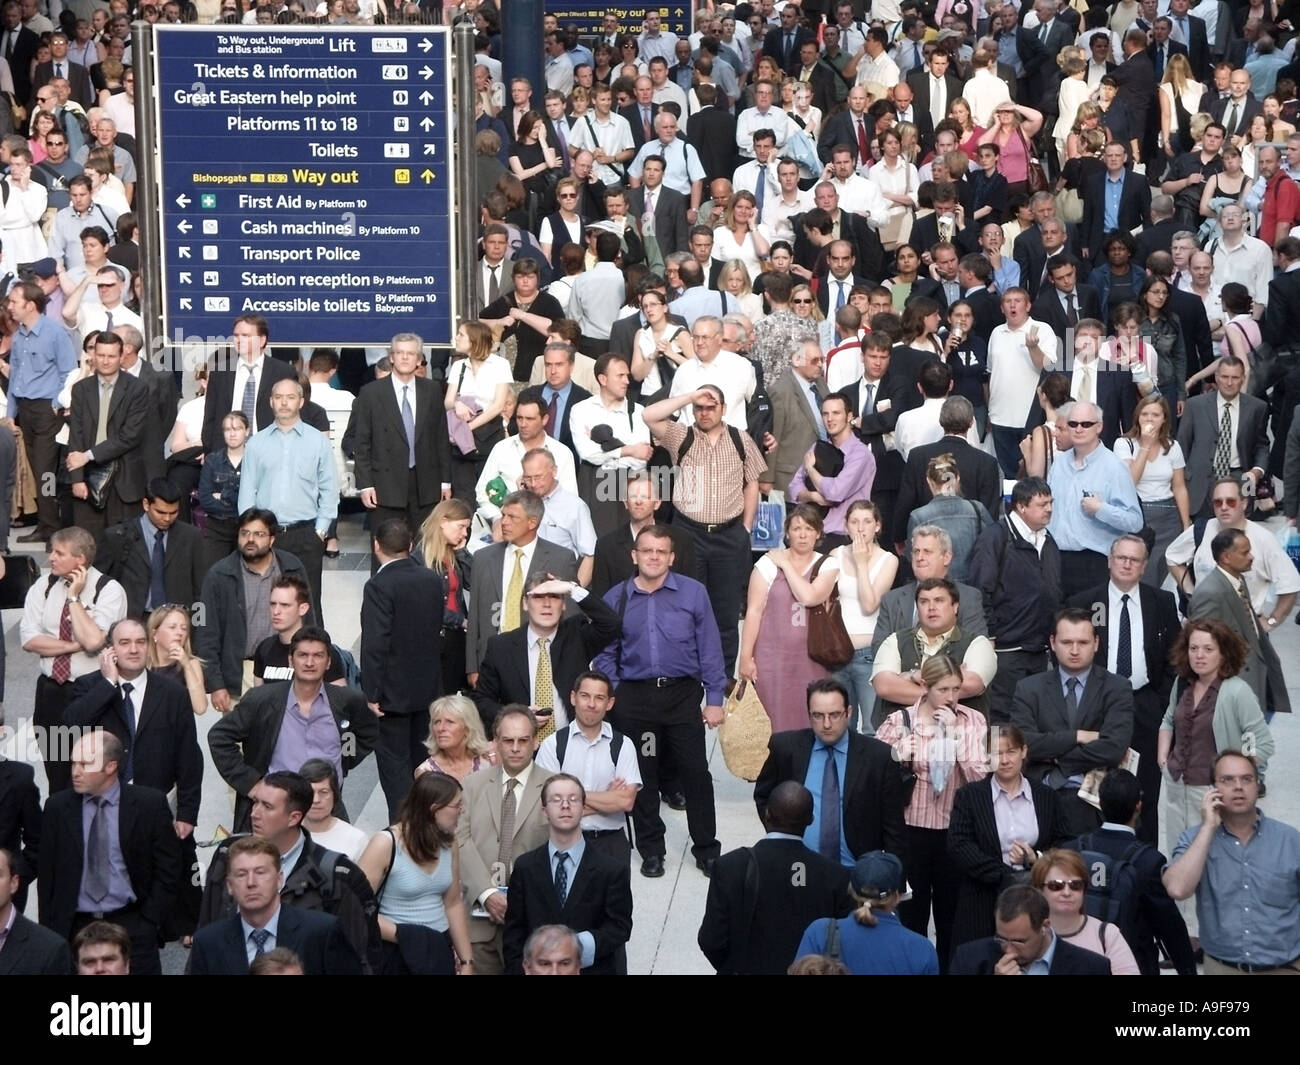 Viaggiatore caos & interruzioni a Liverpool Street Stazione ferroviaria treni pendolari passeggeri in attesa & cercando fino alla partenza delle schede per informazioni REGNO UNITO Foto Stock